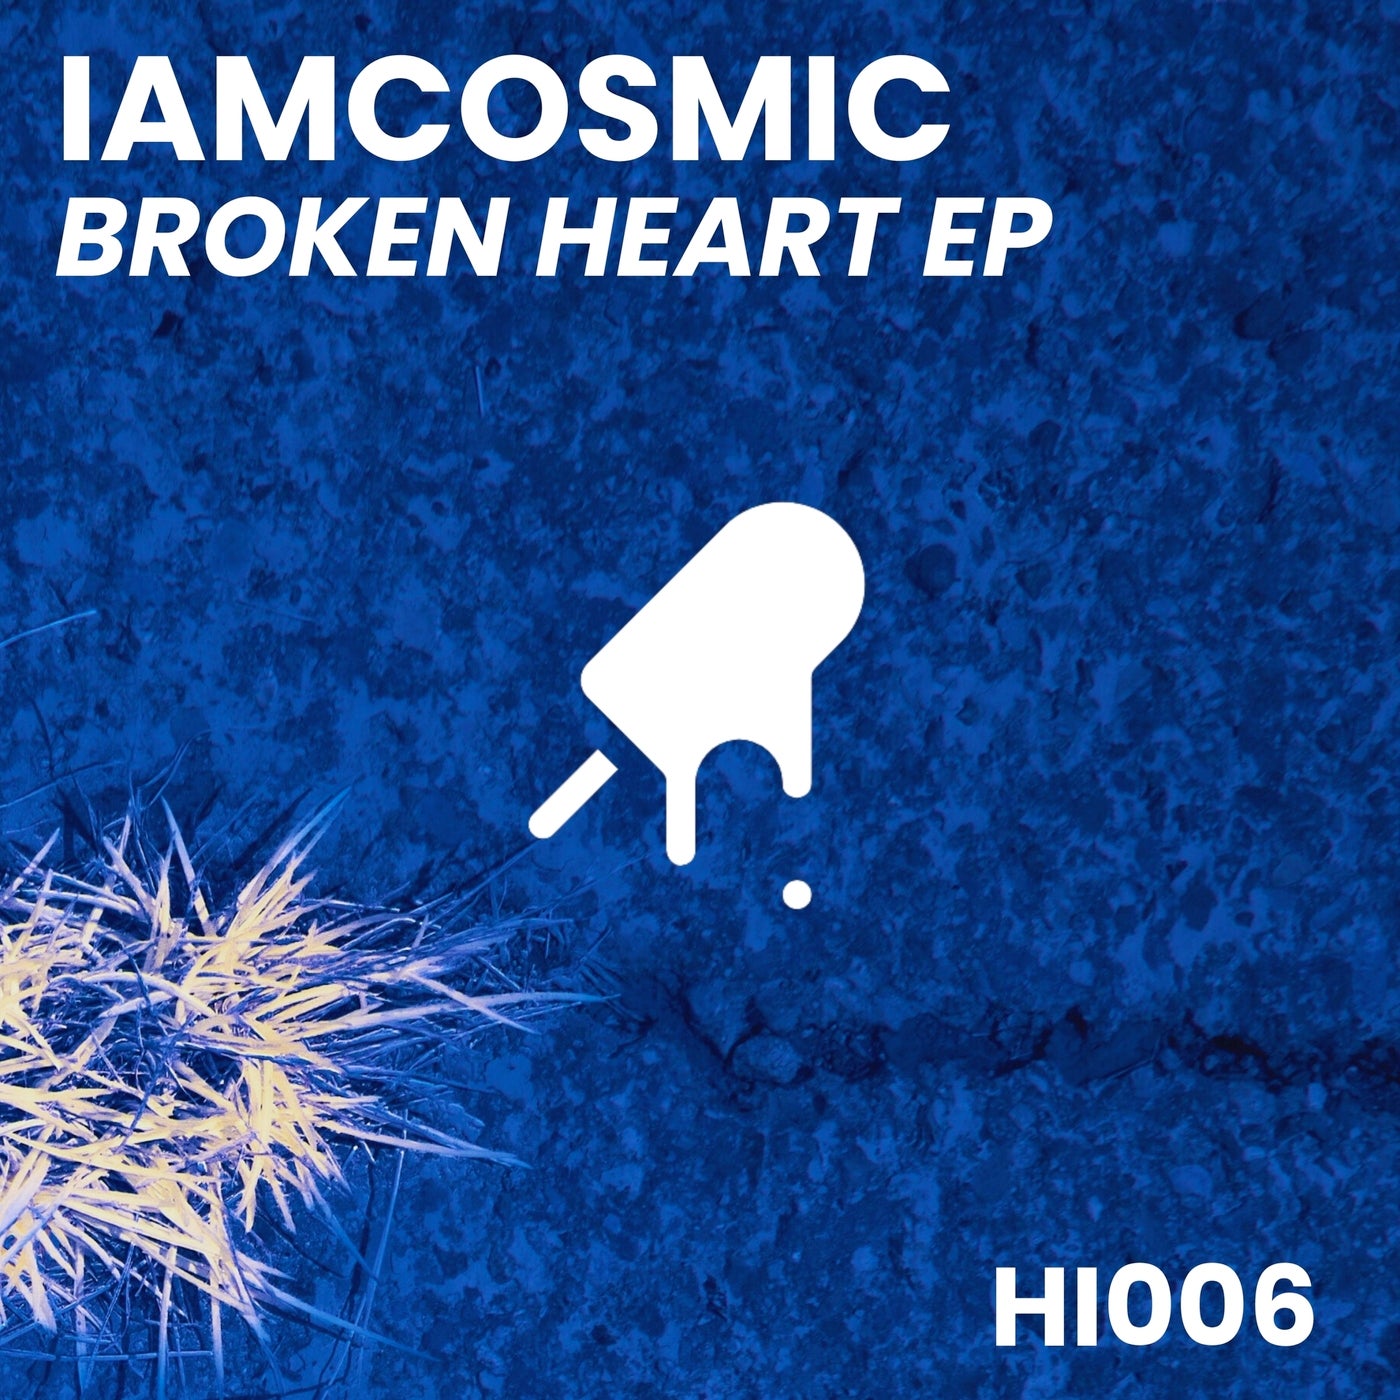 Broken Heart EP